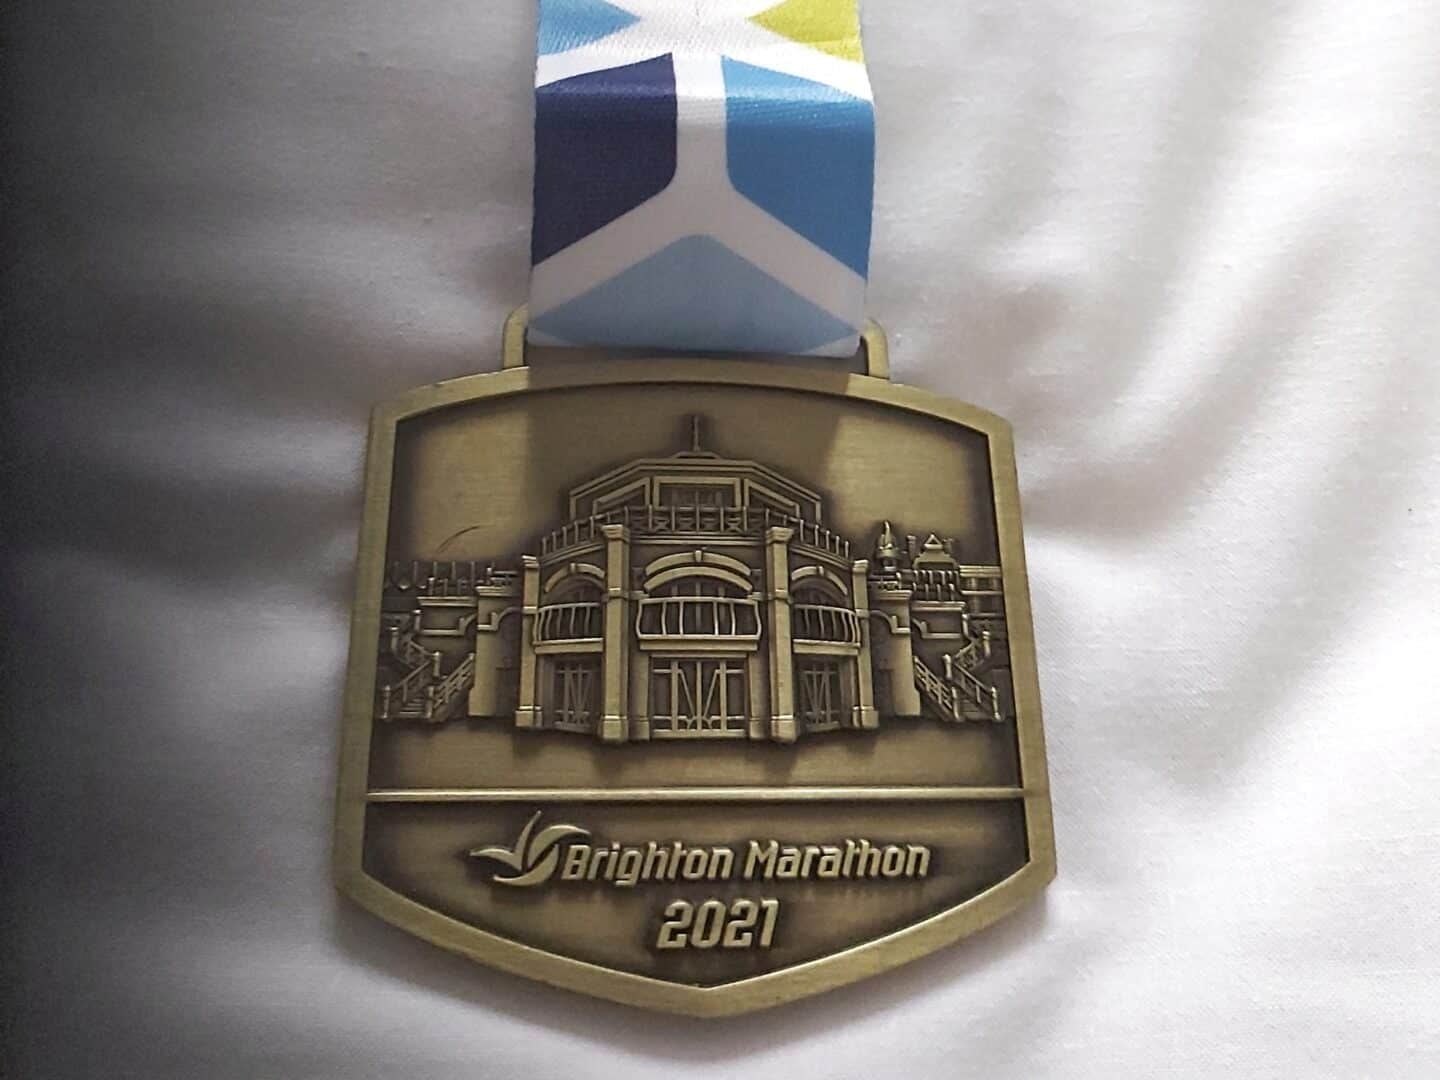 Brighton Marathon medal 2021 on a white background